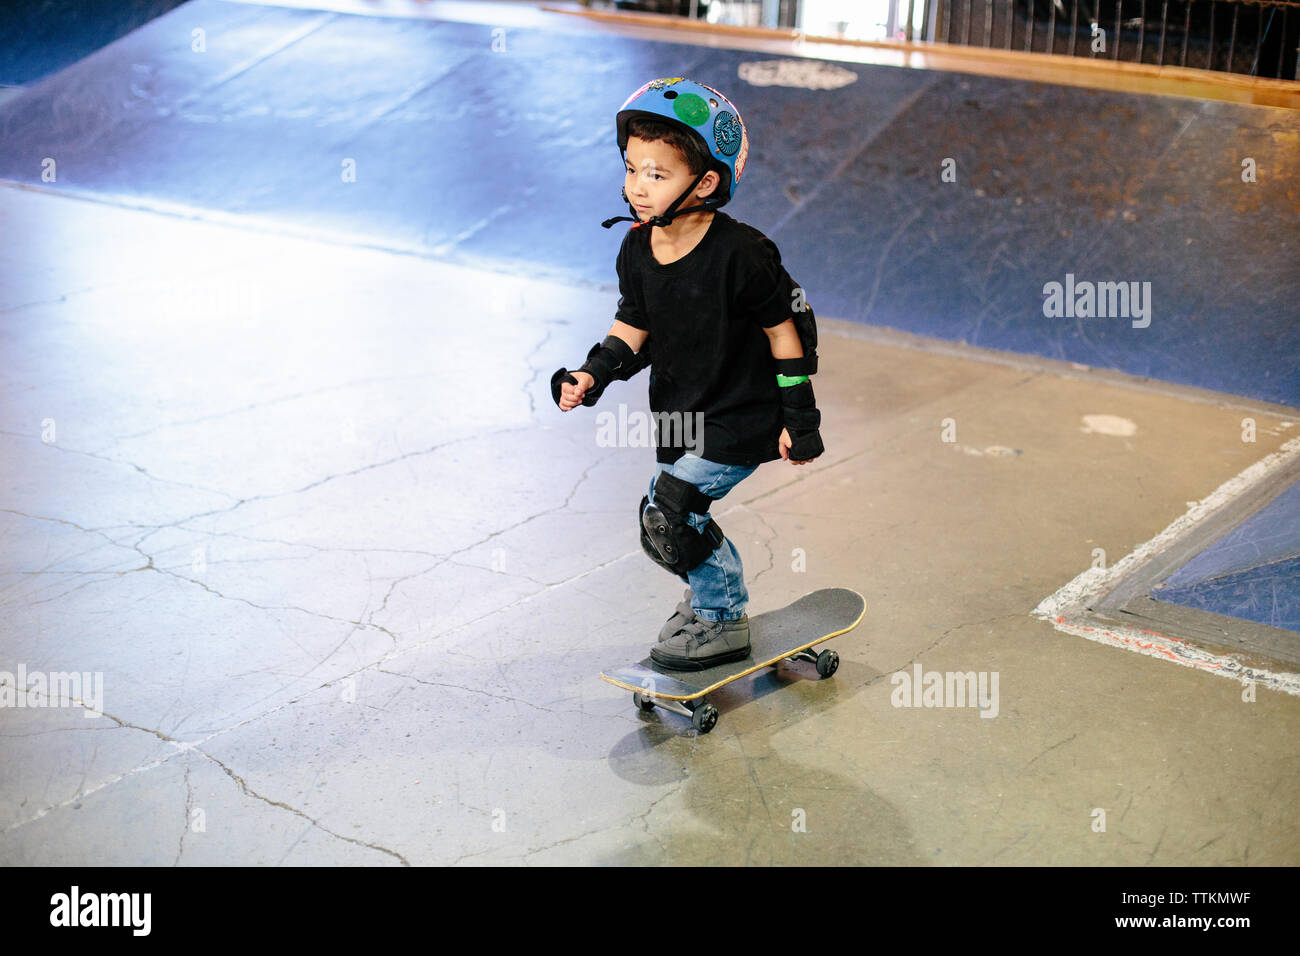 Patinador de skateboard kid en un indoor skatepark Foto de stock